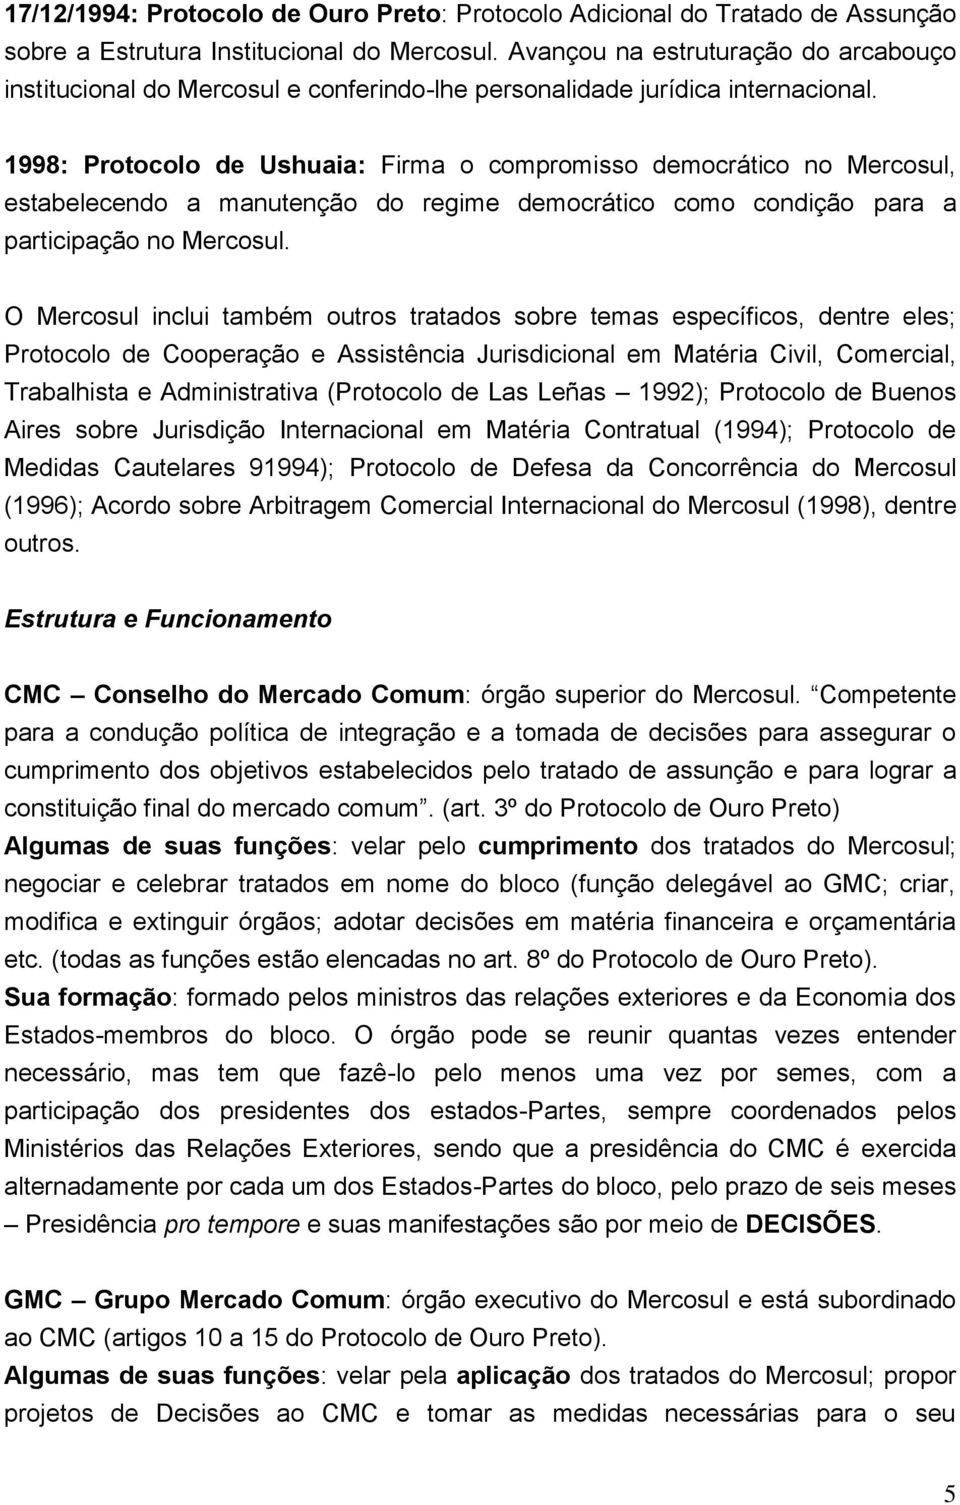 1998: Protocolo de Ushuaia: Firma o compromisso democrático no Mercosul, estabelecendo a manutenção do regime democrático como condição para a participação no Mercosul.